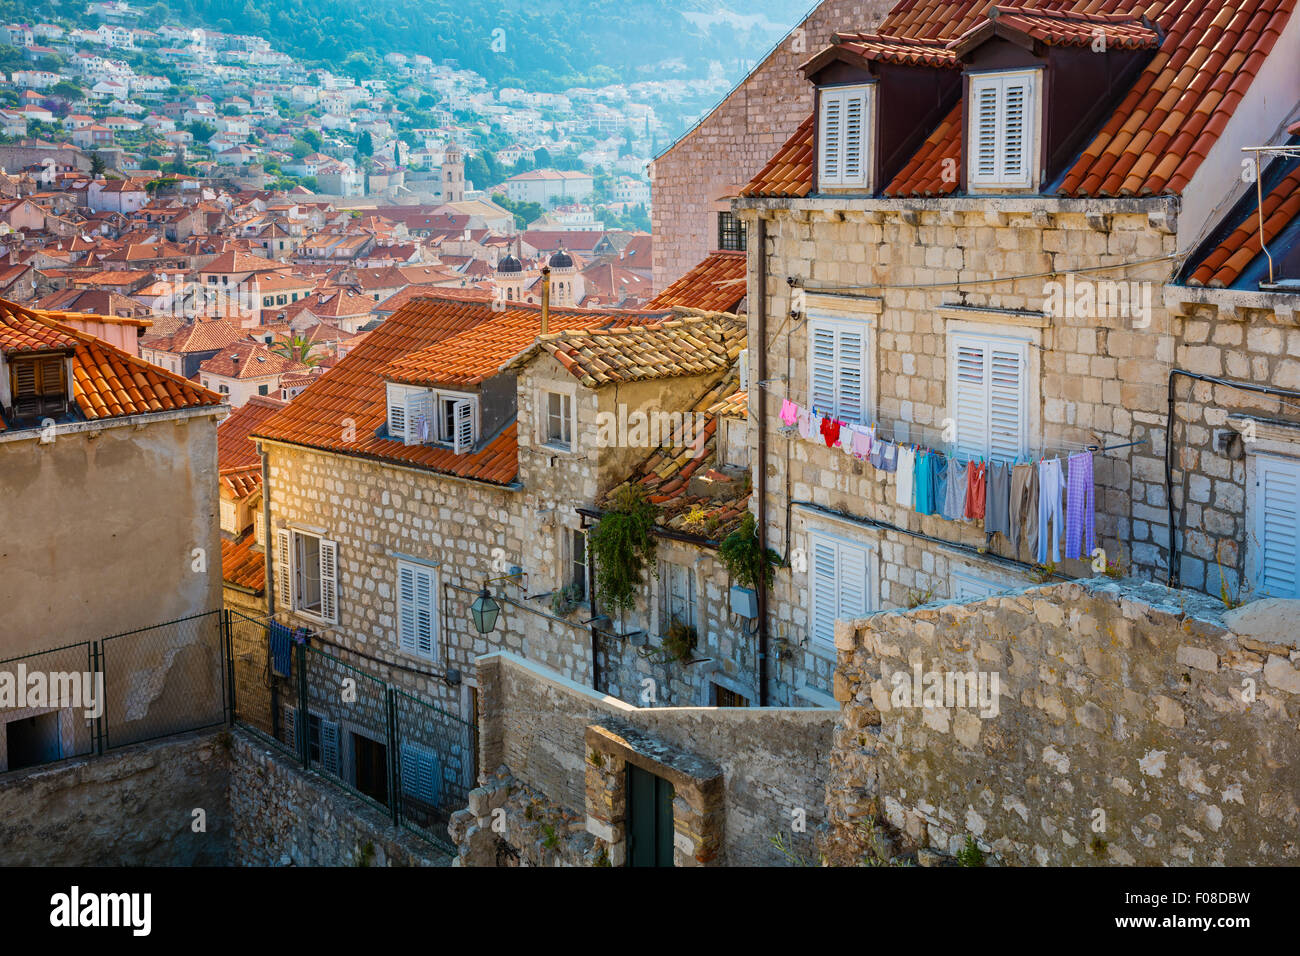 Dubrovnik, Croatie, avec sa caractéristique de la ville médiévale. Dubrovnik est une ville croate sur l'Adriatique. Banque D'Images